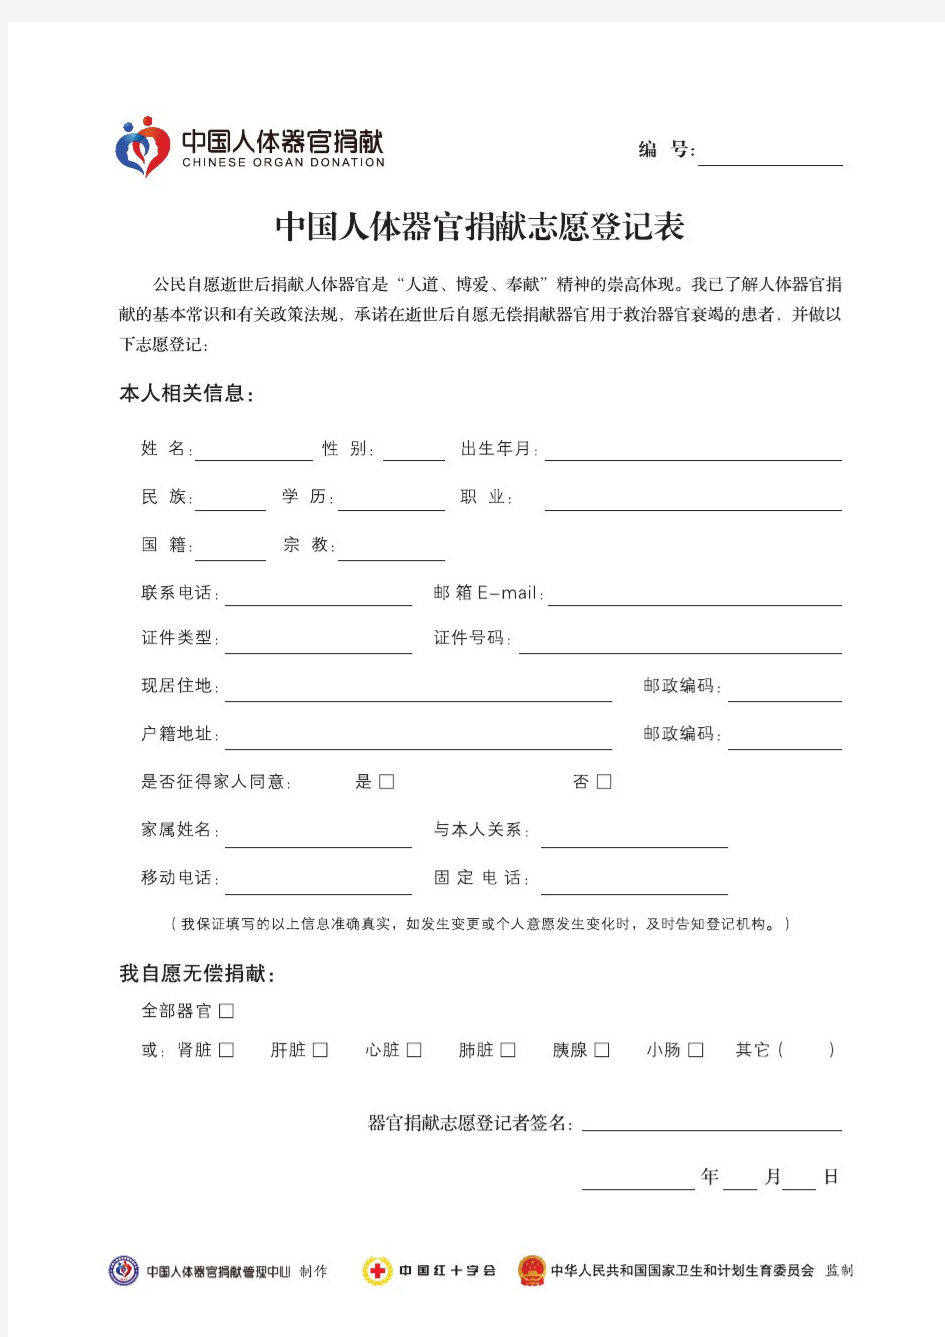 中国人体器官捐献志愿登记表